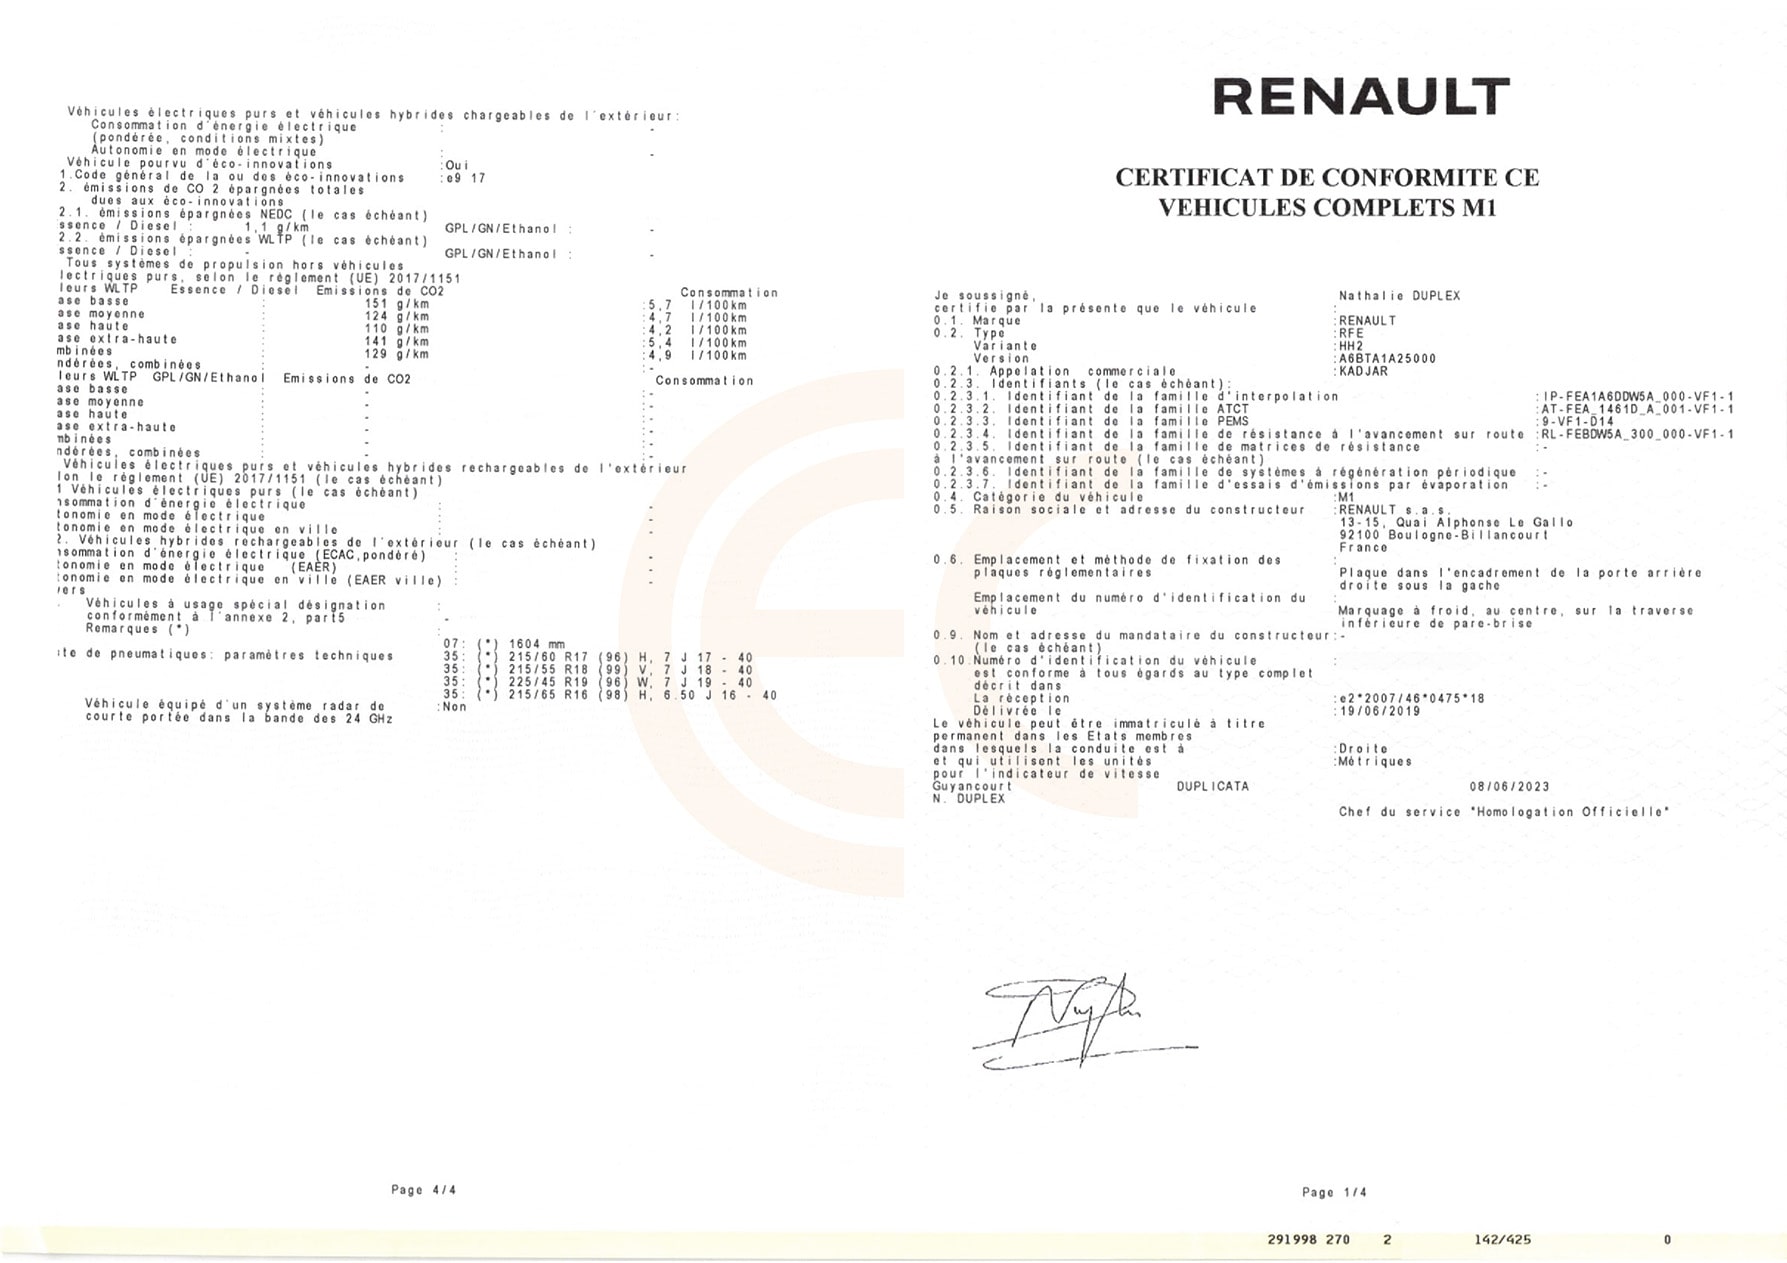 Пример документа COC для автомобиля Renault.